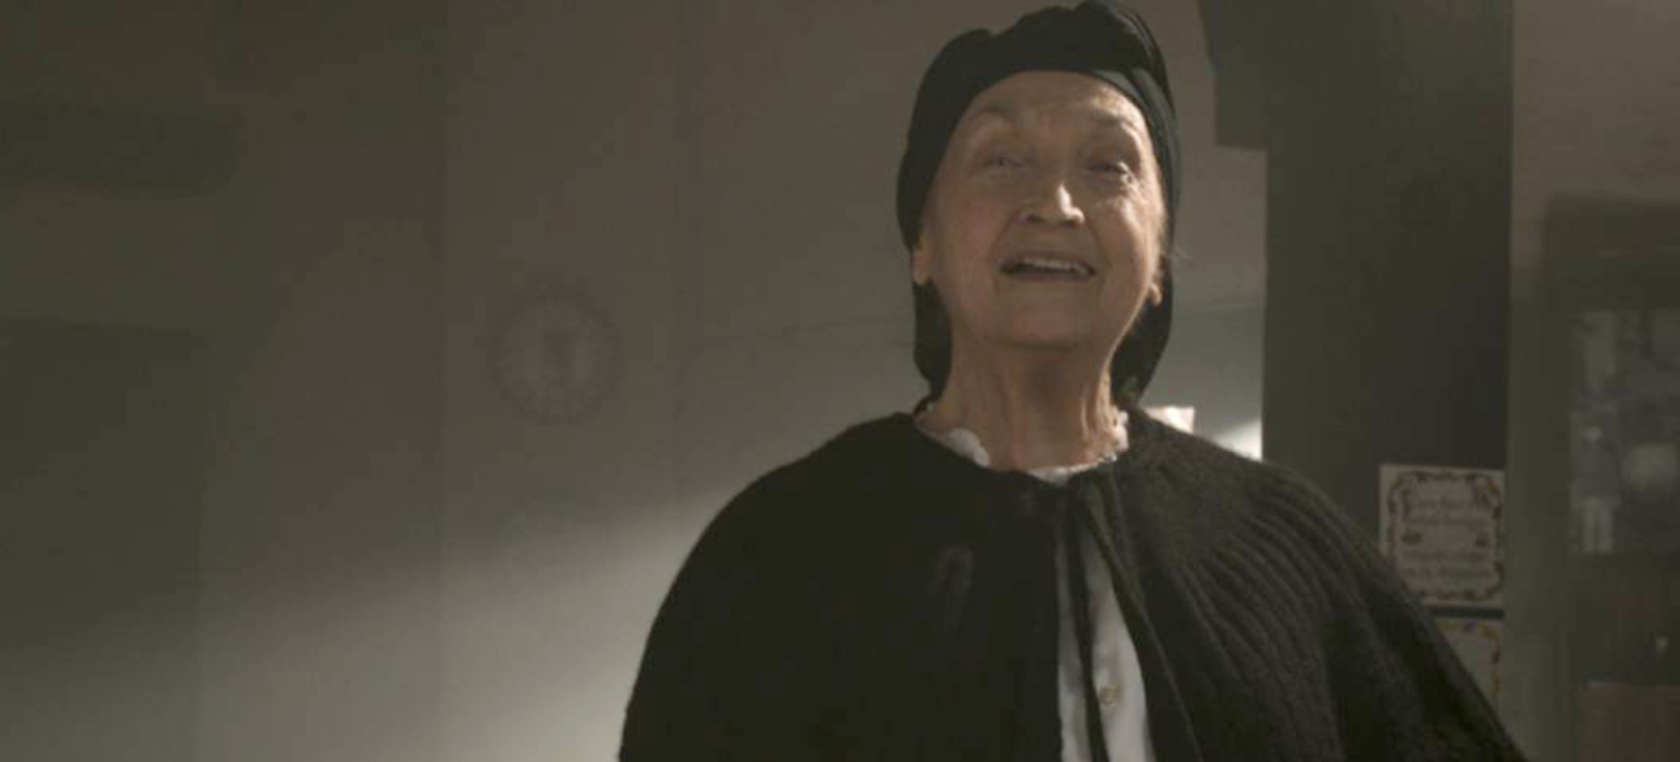 Muere María Antonia Goás, la anciana del famoso anuncio de la Fabada Litoral